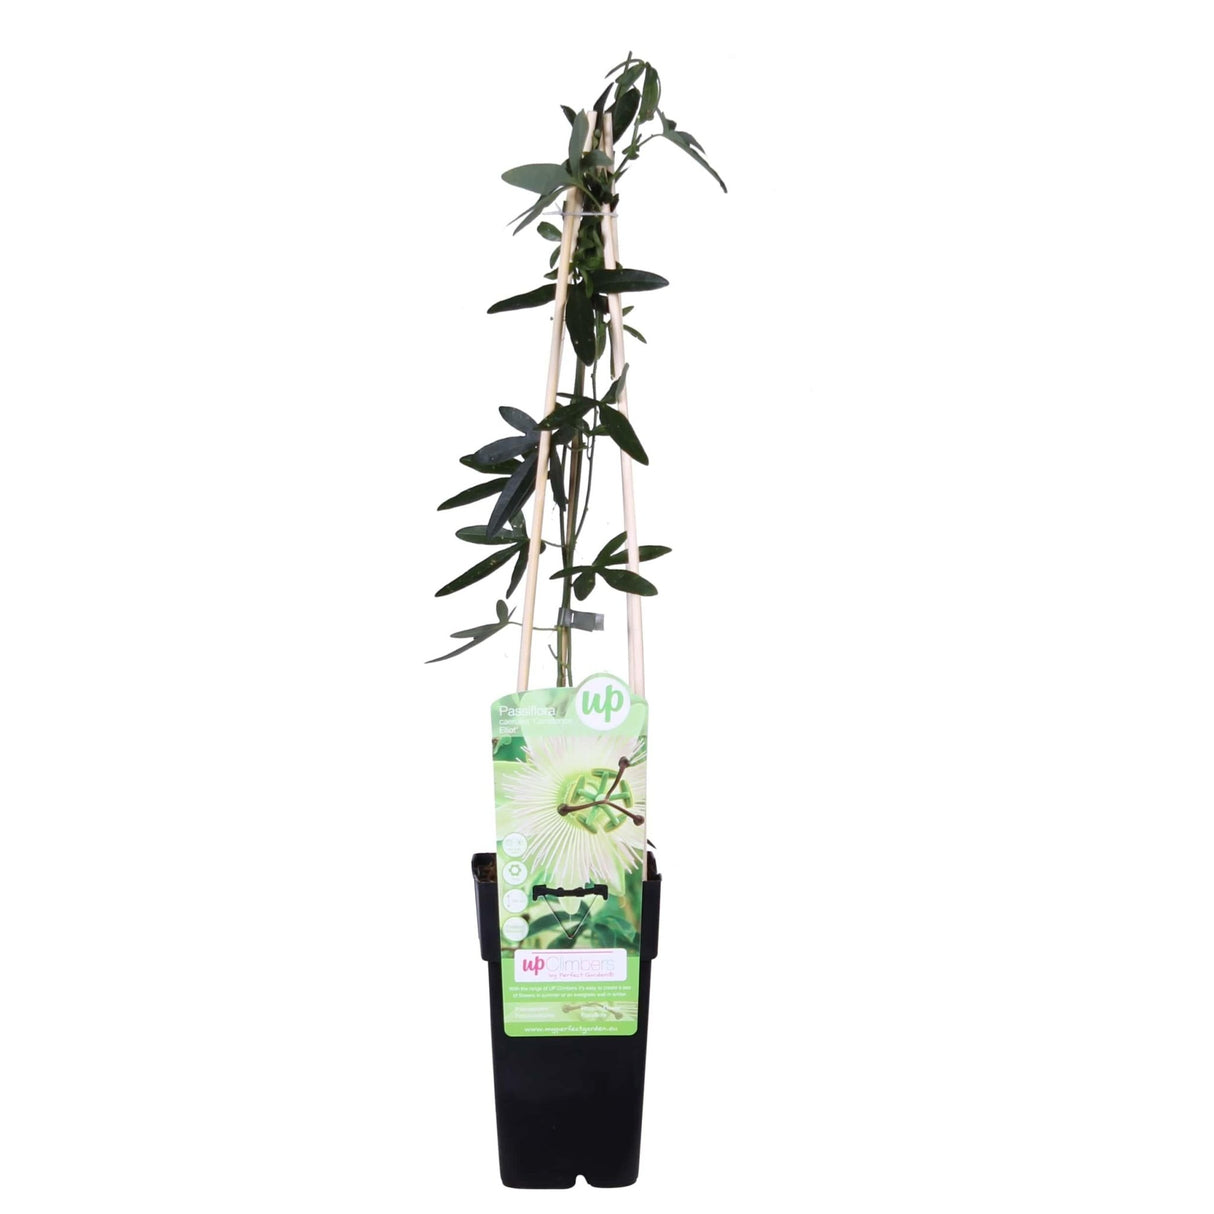 Livraison plante - Passiflora bleu 'Constance Elliot' - ↨65cm - Ø15 - plante d'extérieur grimpante fleurie